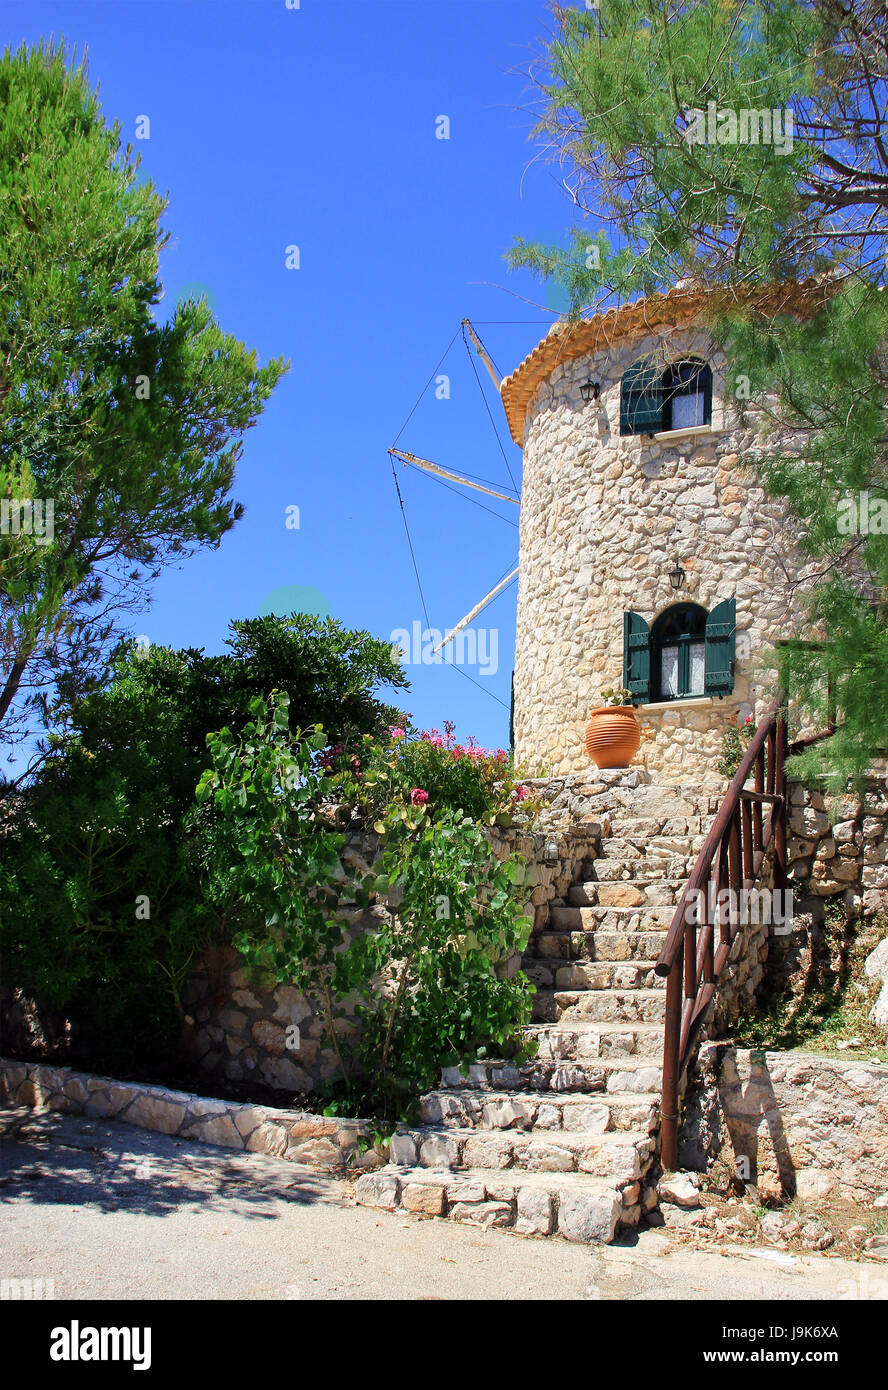 Griechische traditionelle alte Windmühle am Kap Skinari, Insel Zakynthos, Griechenland Stockfoto